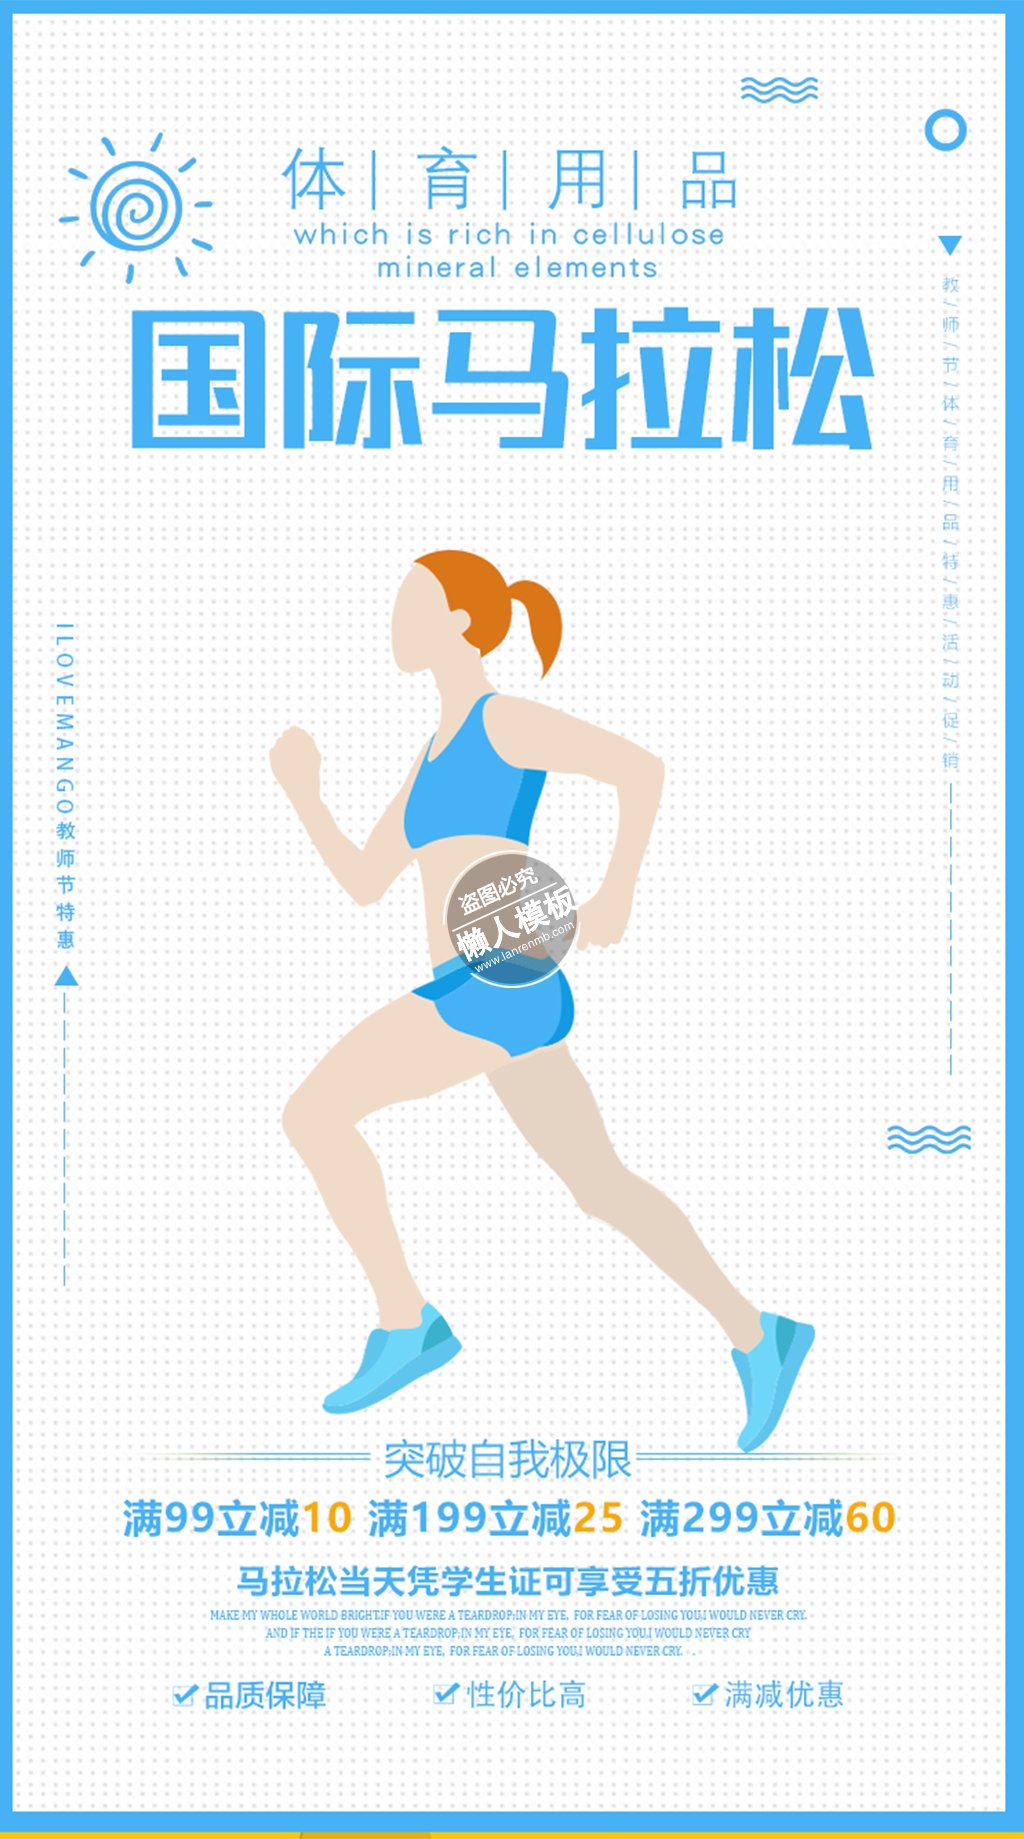 国际马拉松体育用品海报ui界面设计移动端手机网页psd素材下载